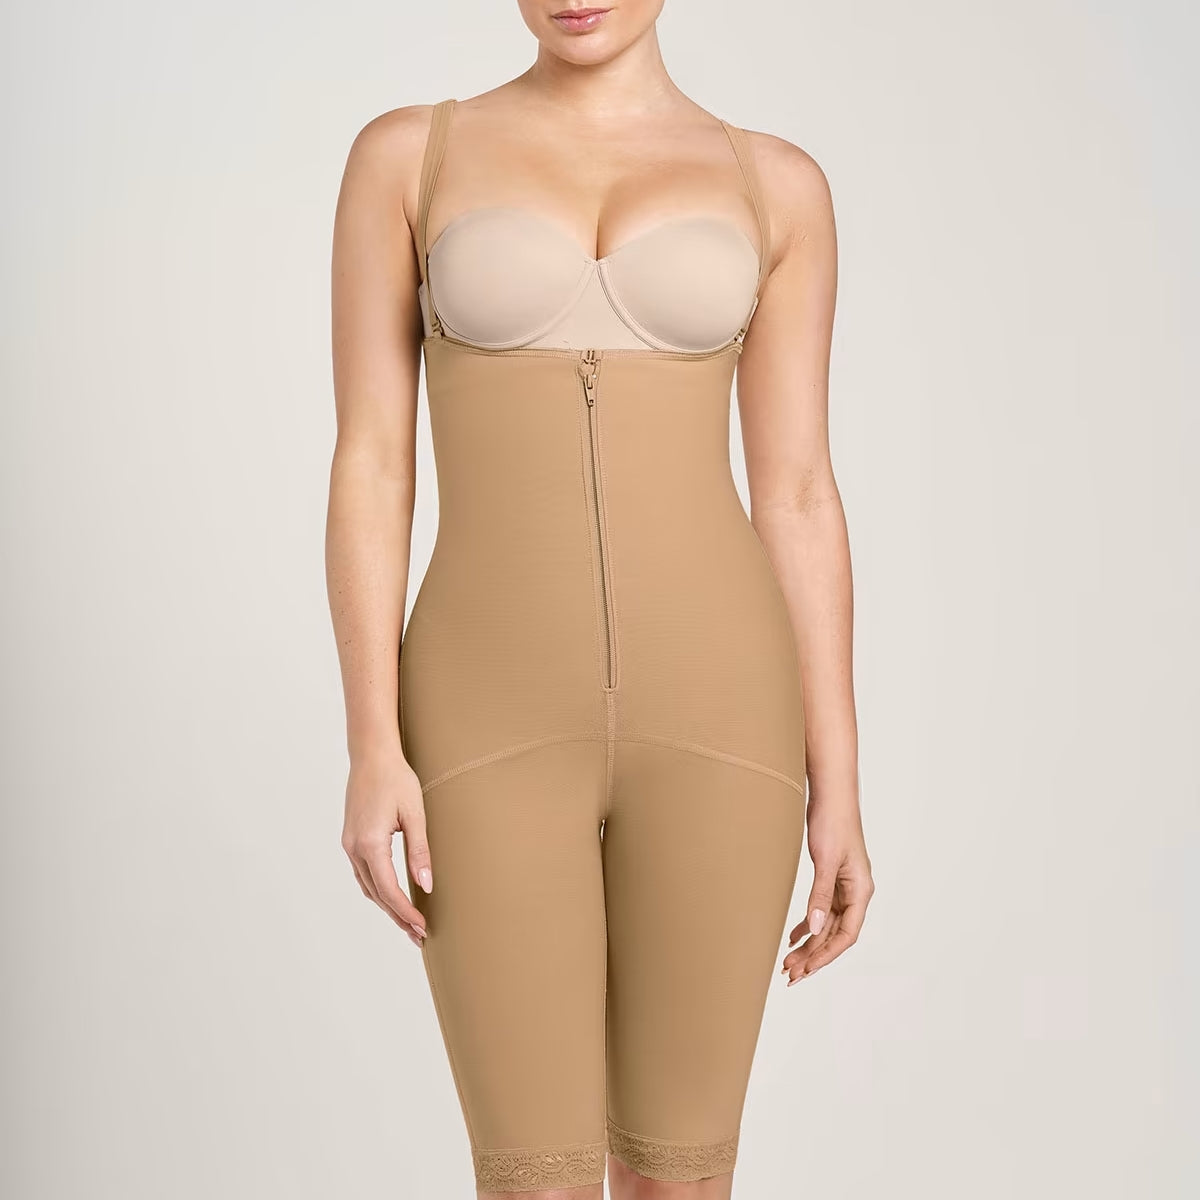 http://corseterialita.com/cdn/shop/products/18674N_802_1200x1500_2021_1.jpg?v=1677326847